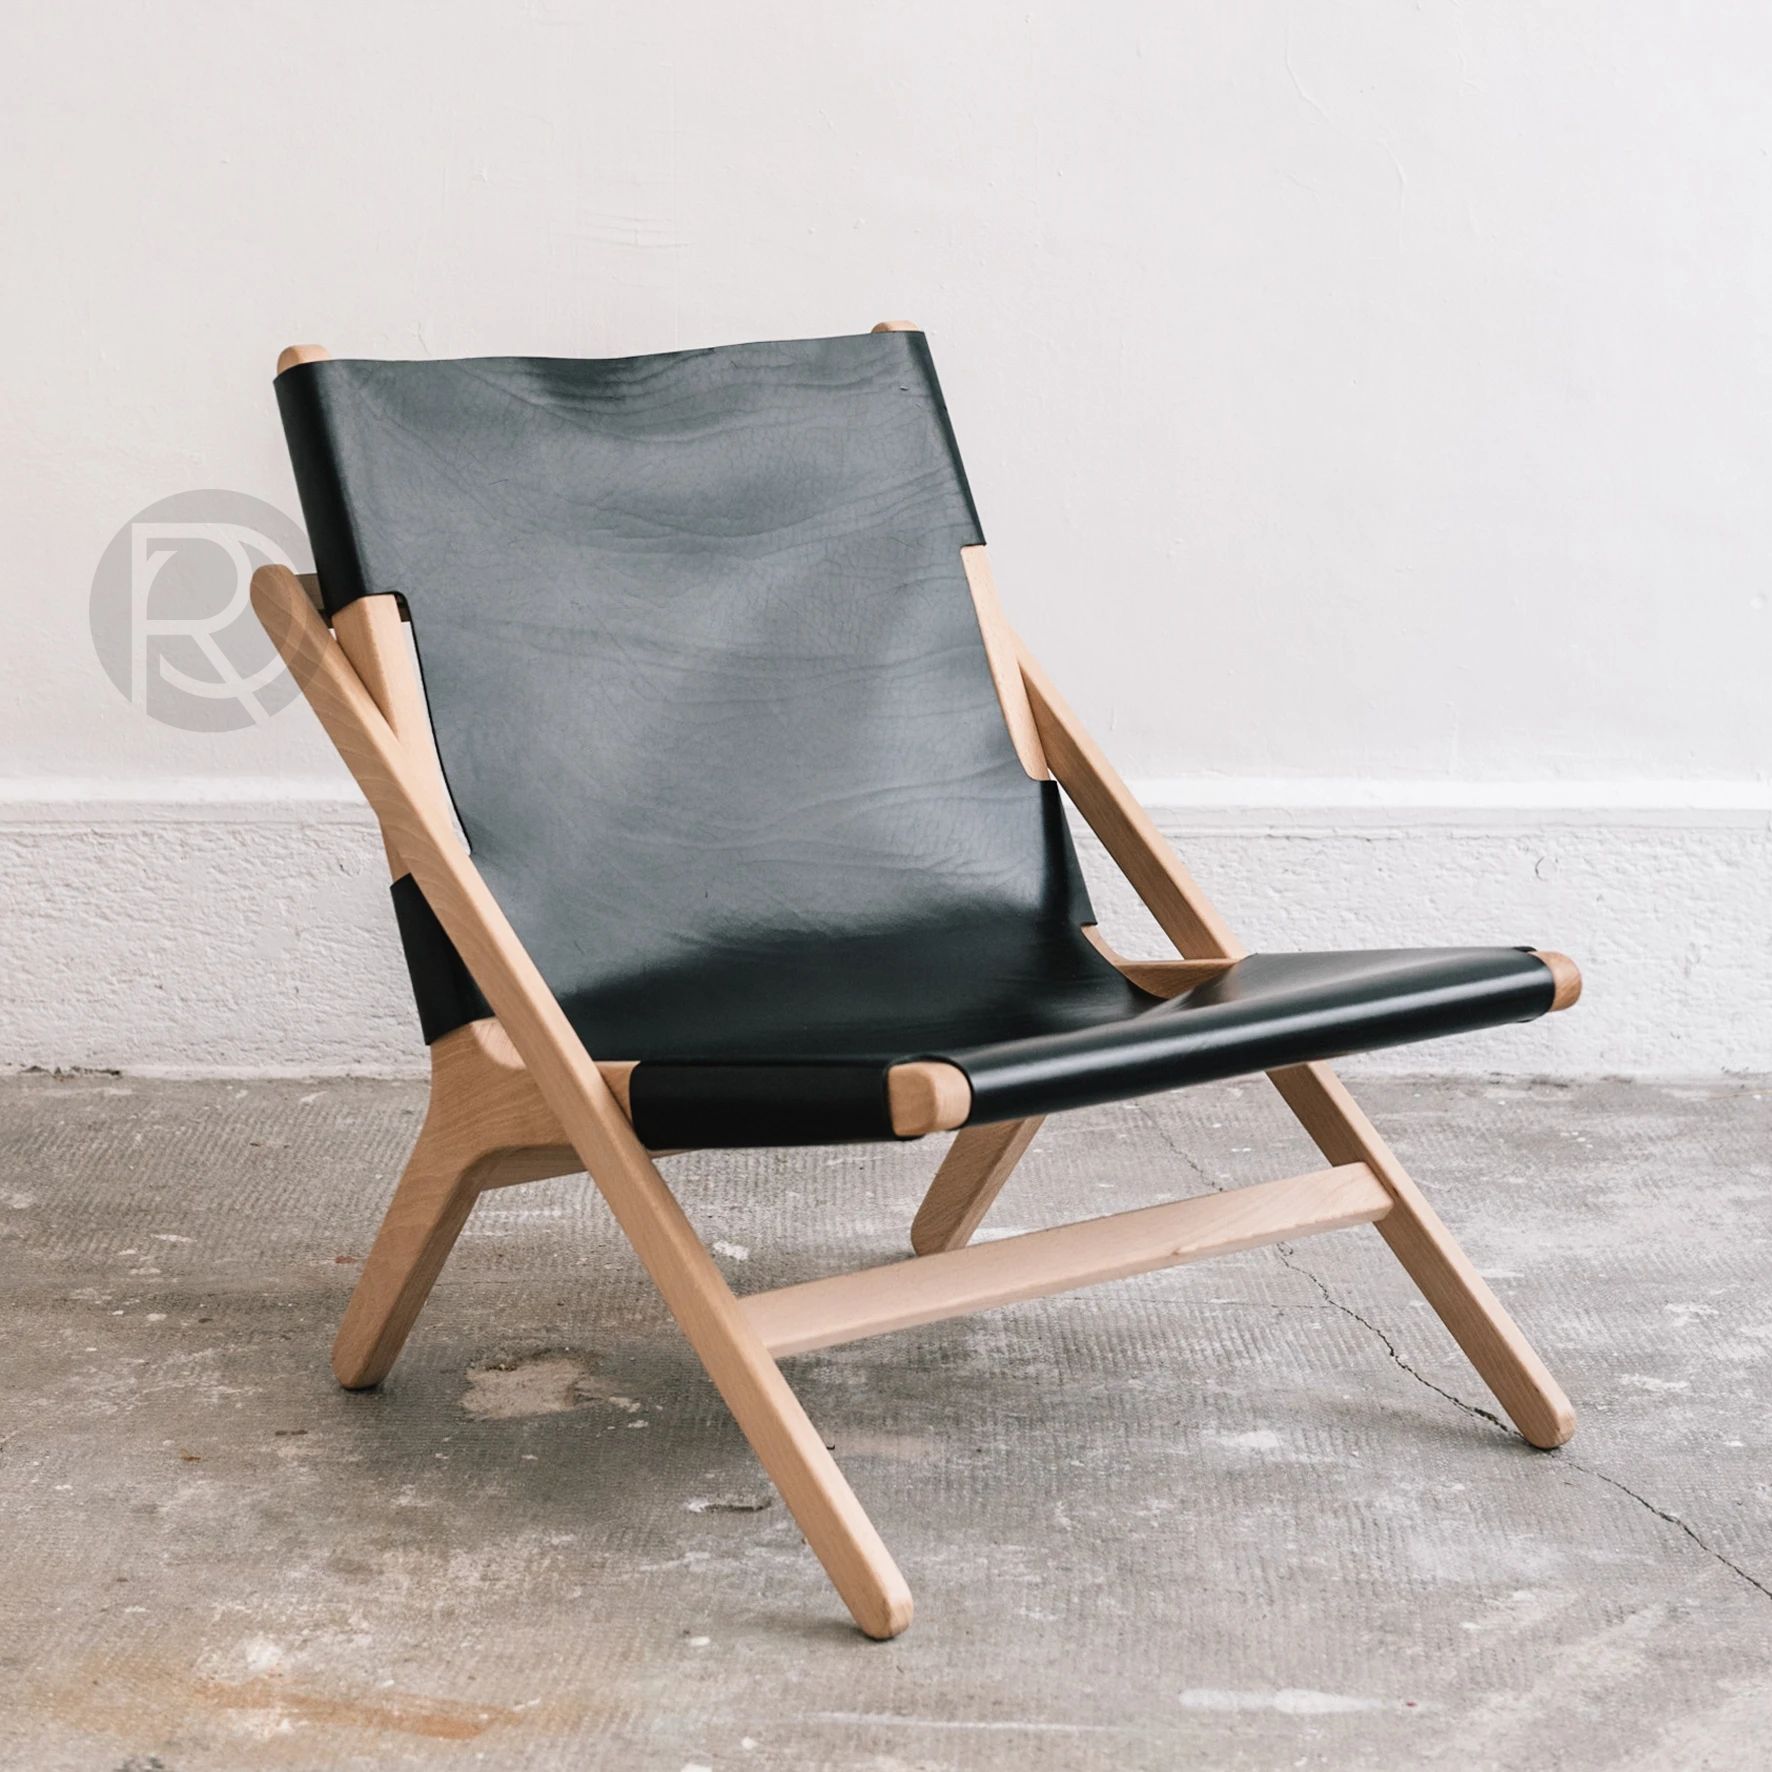 Chair H by An°so